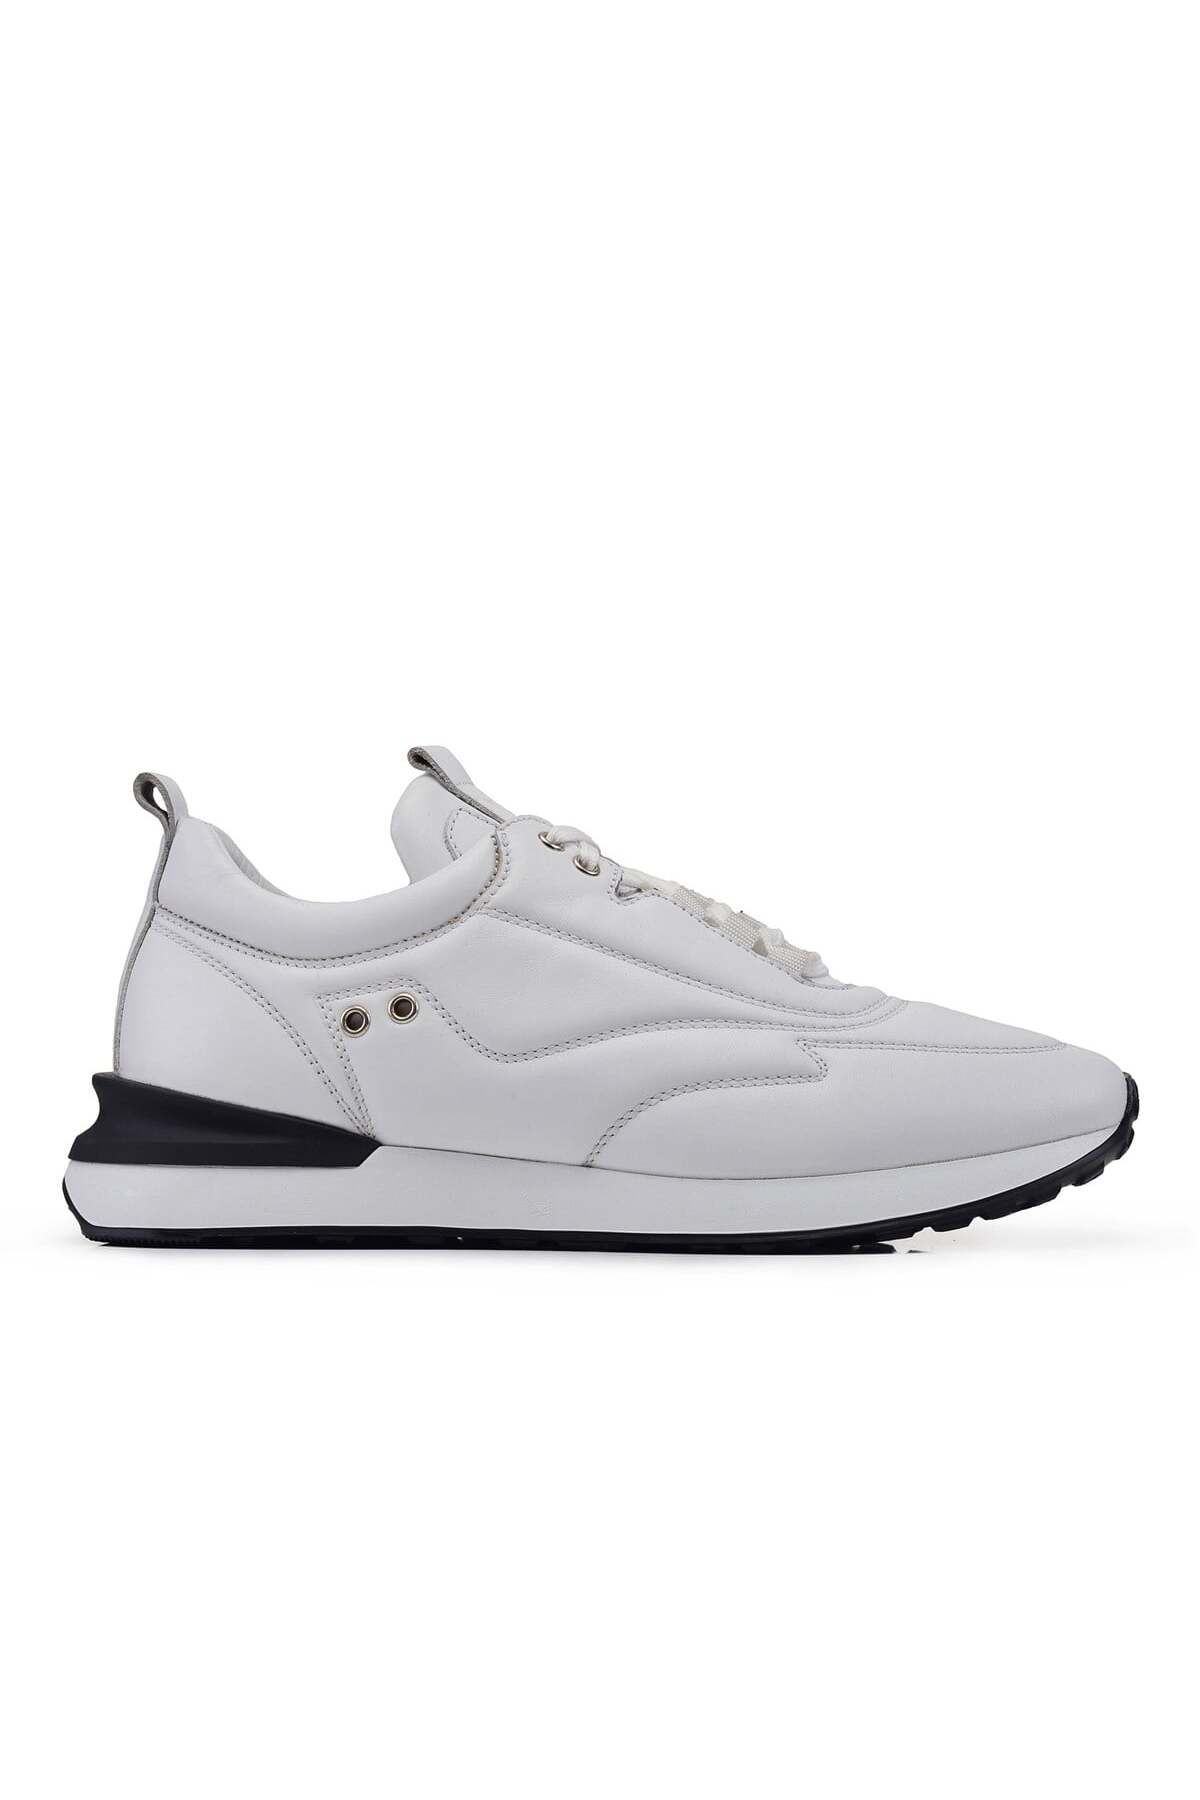 Nevzat Onay Beyaz Sneaker Erkek Ayakkabı -71151-